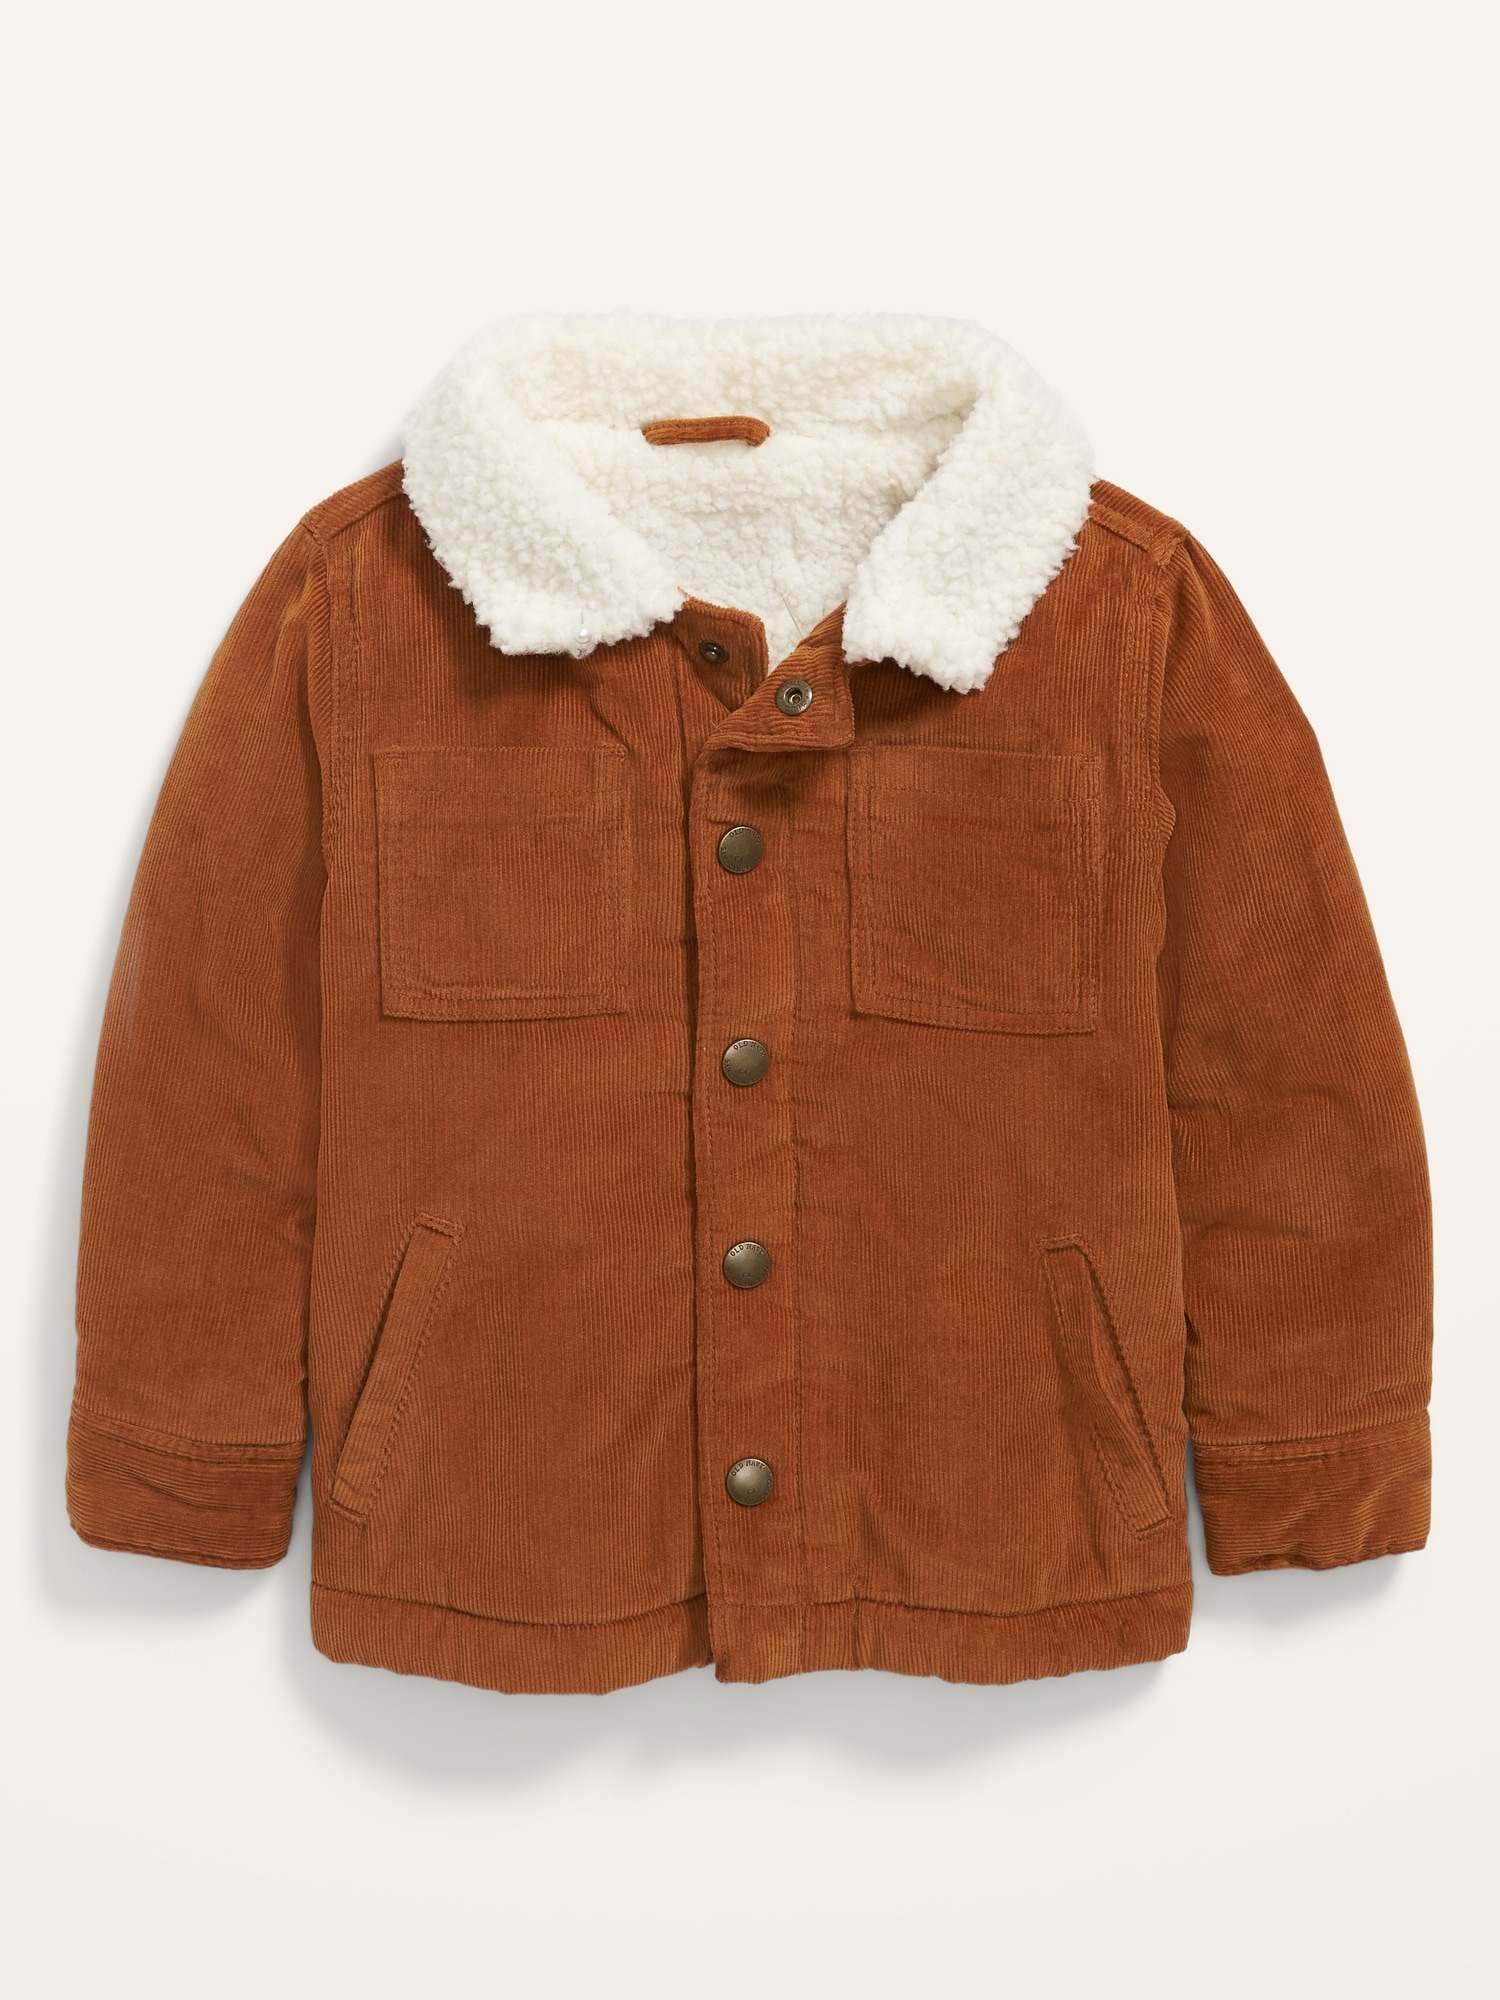 Fur Fleece Lined Shearling Corduroy Trucker Jacket